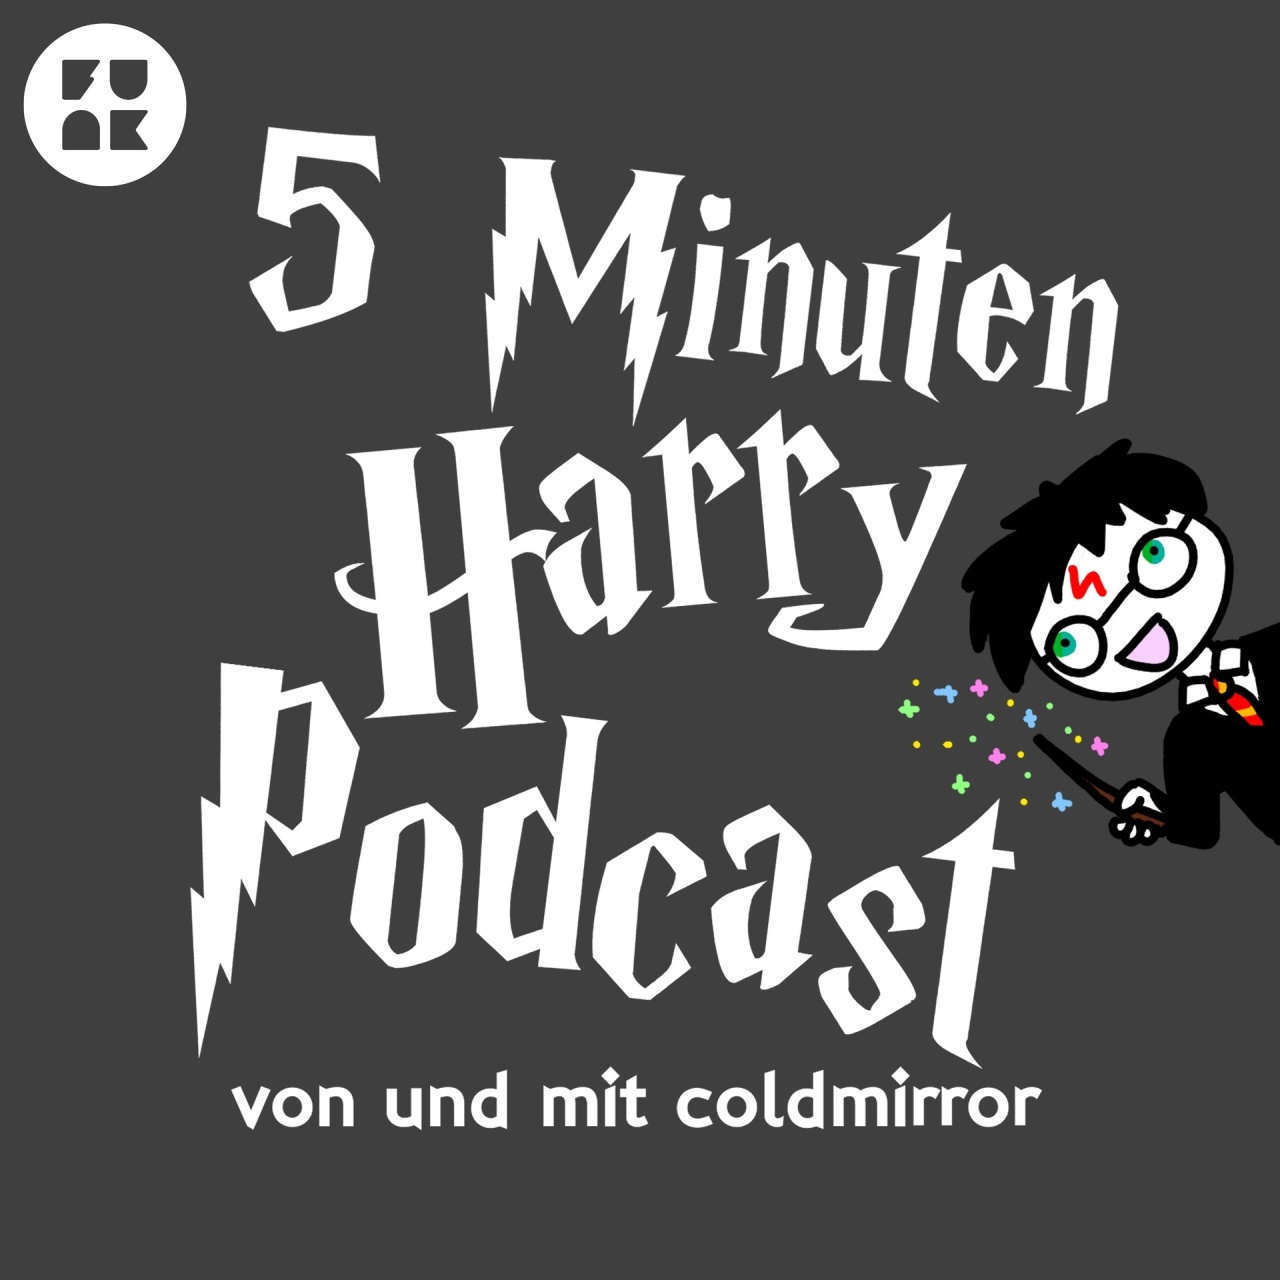 5 Minuten Harry Podcast von Coldmirror · Podcast in der ARD Audiothek